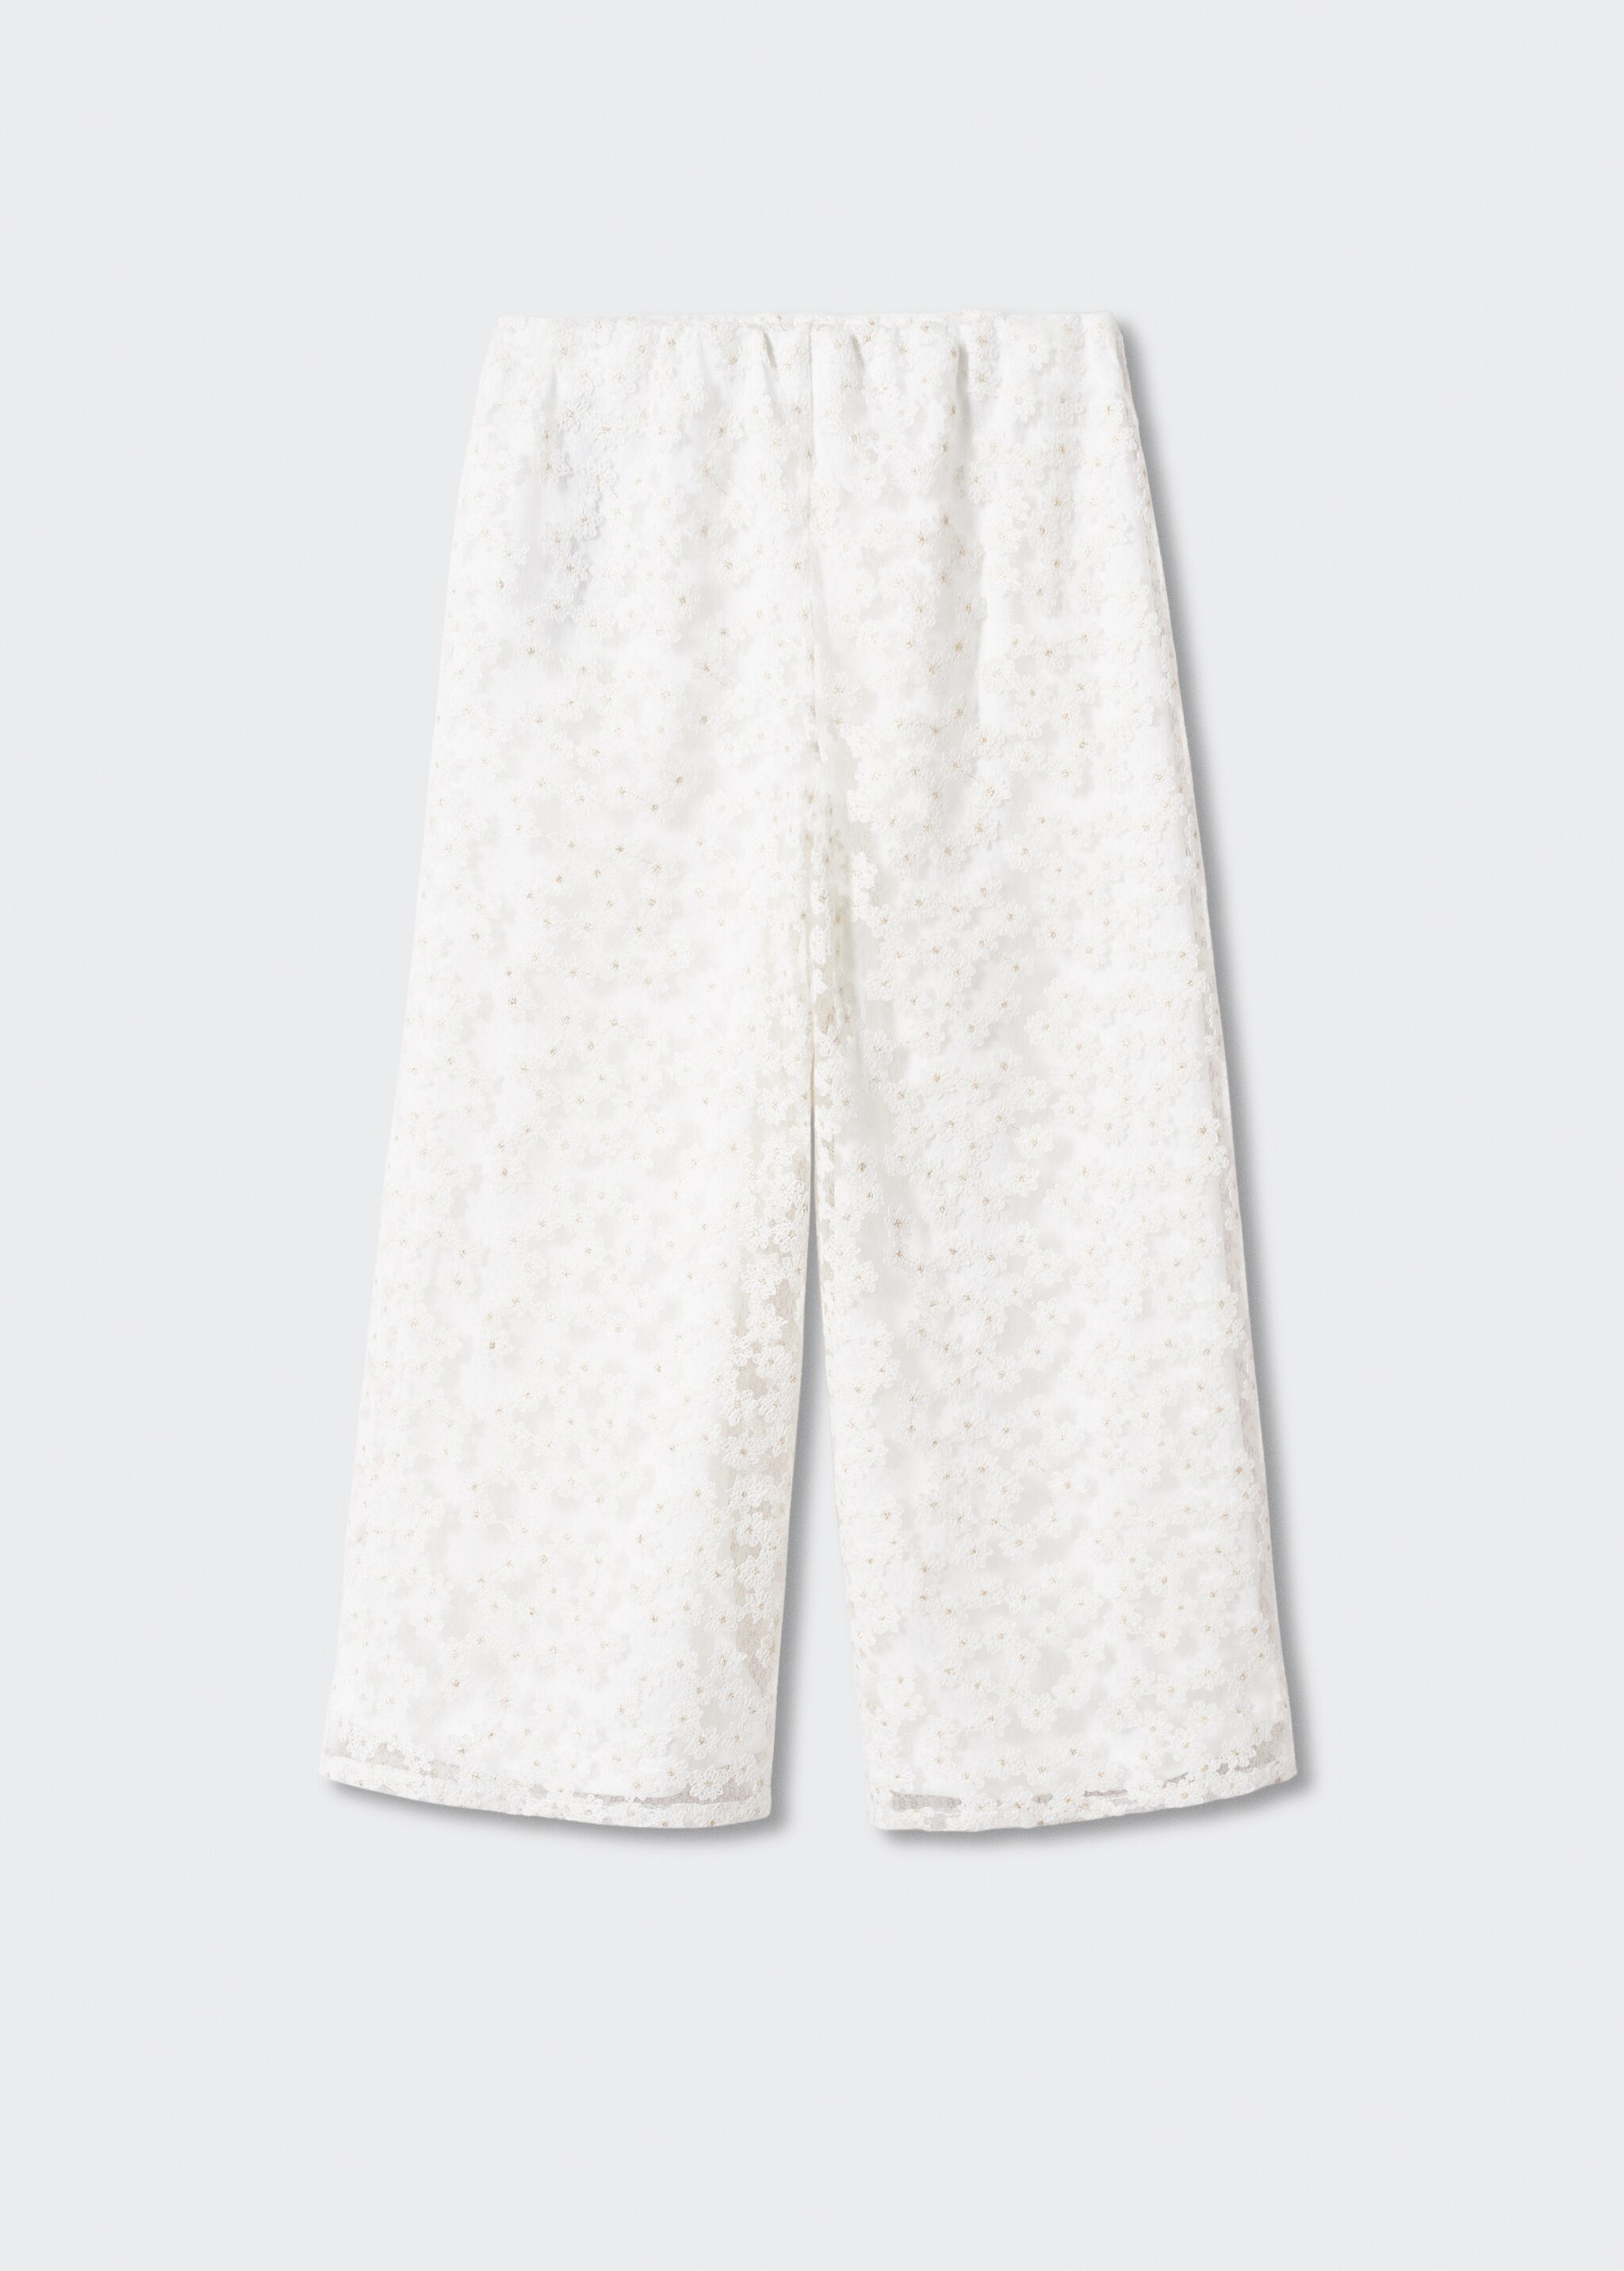 Pantalón culotte flores bordadas - Artículo sin modelo